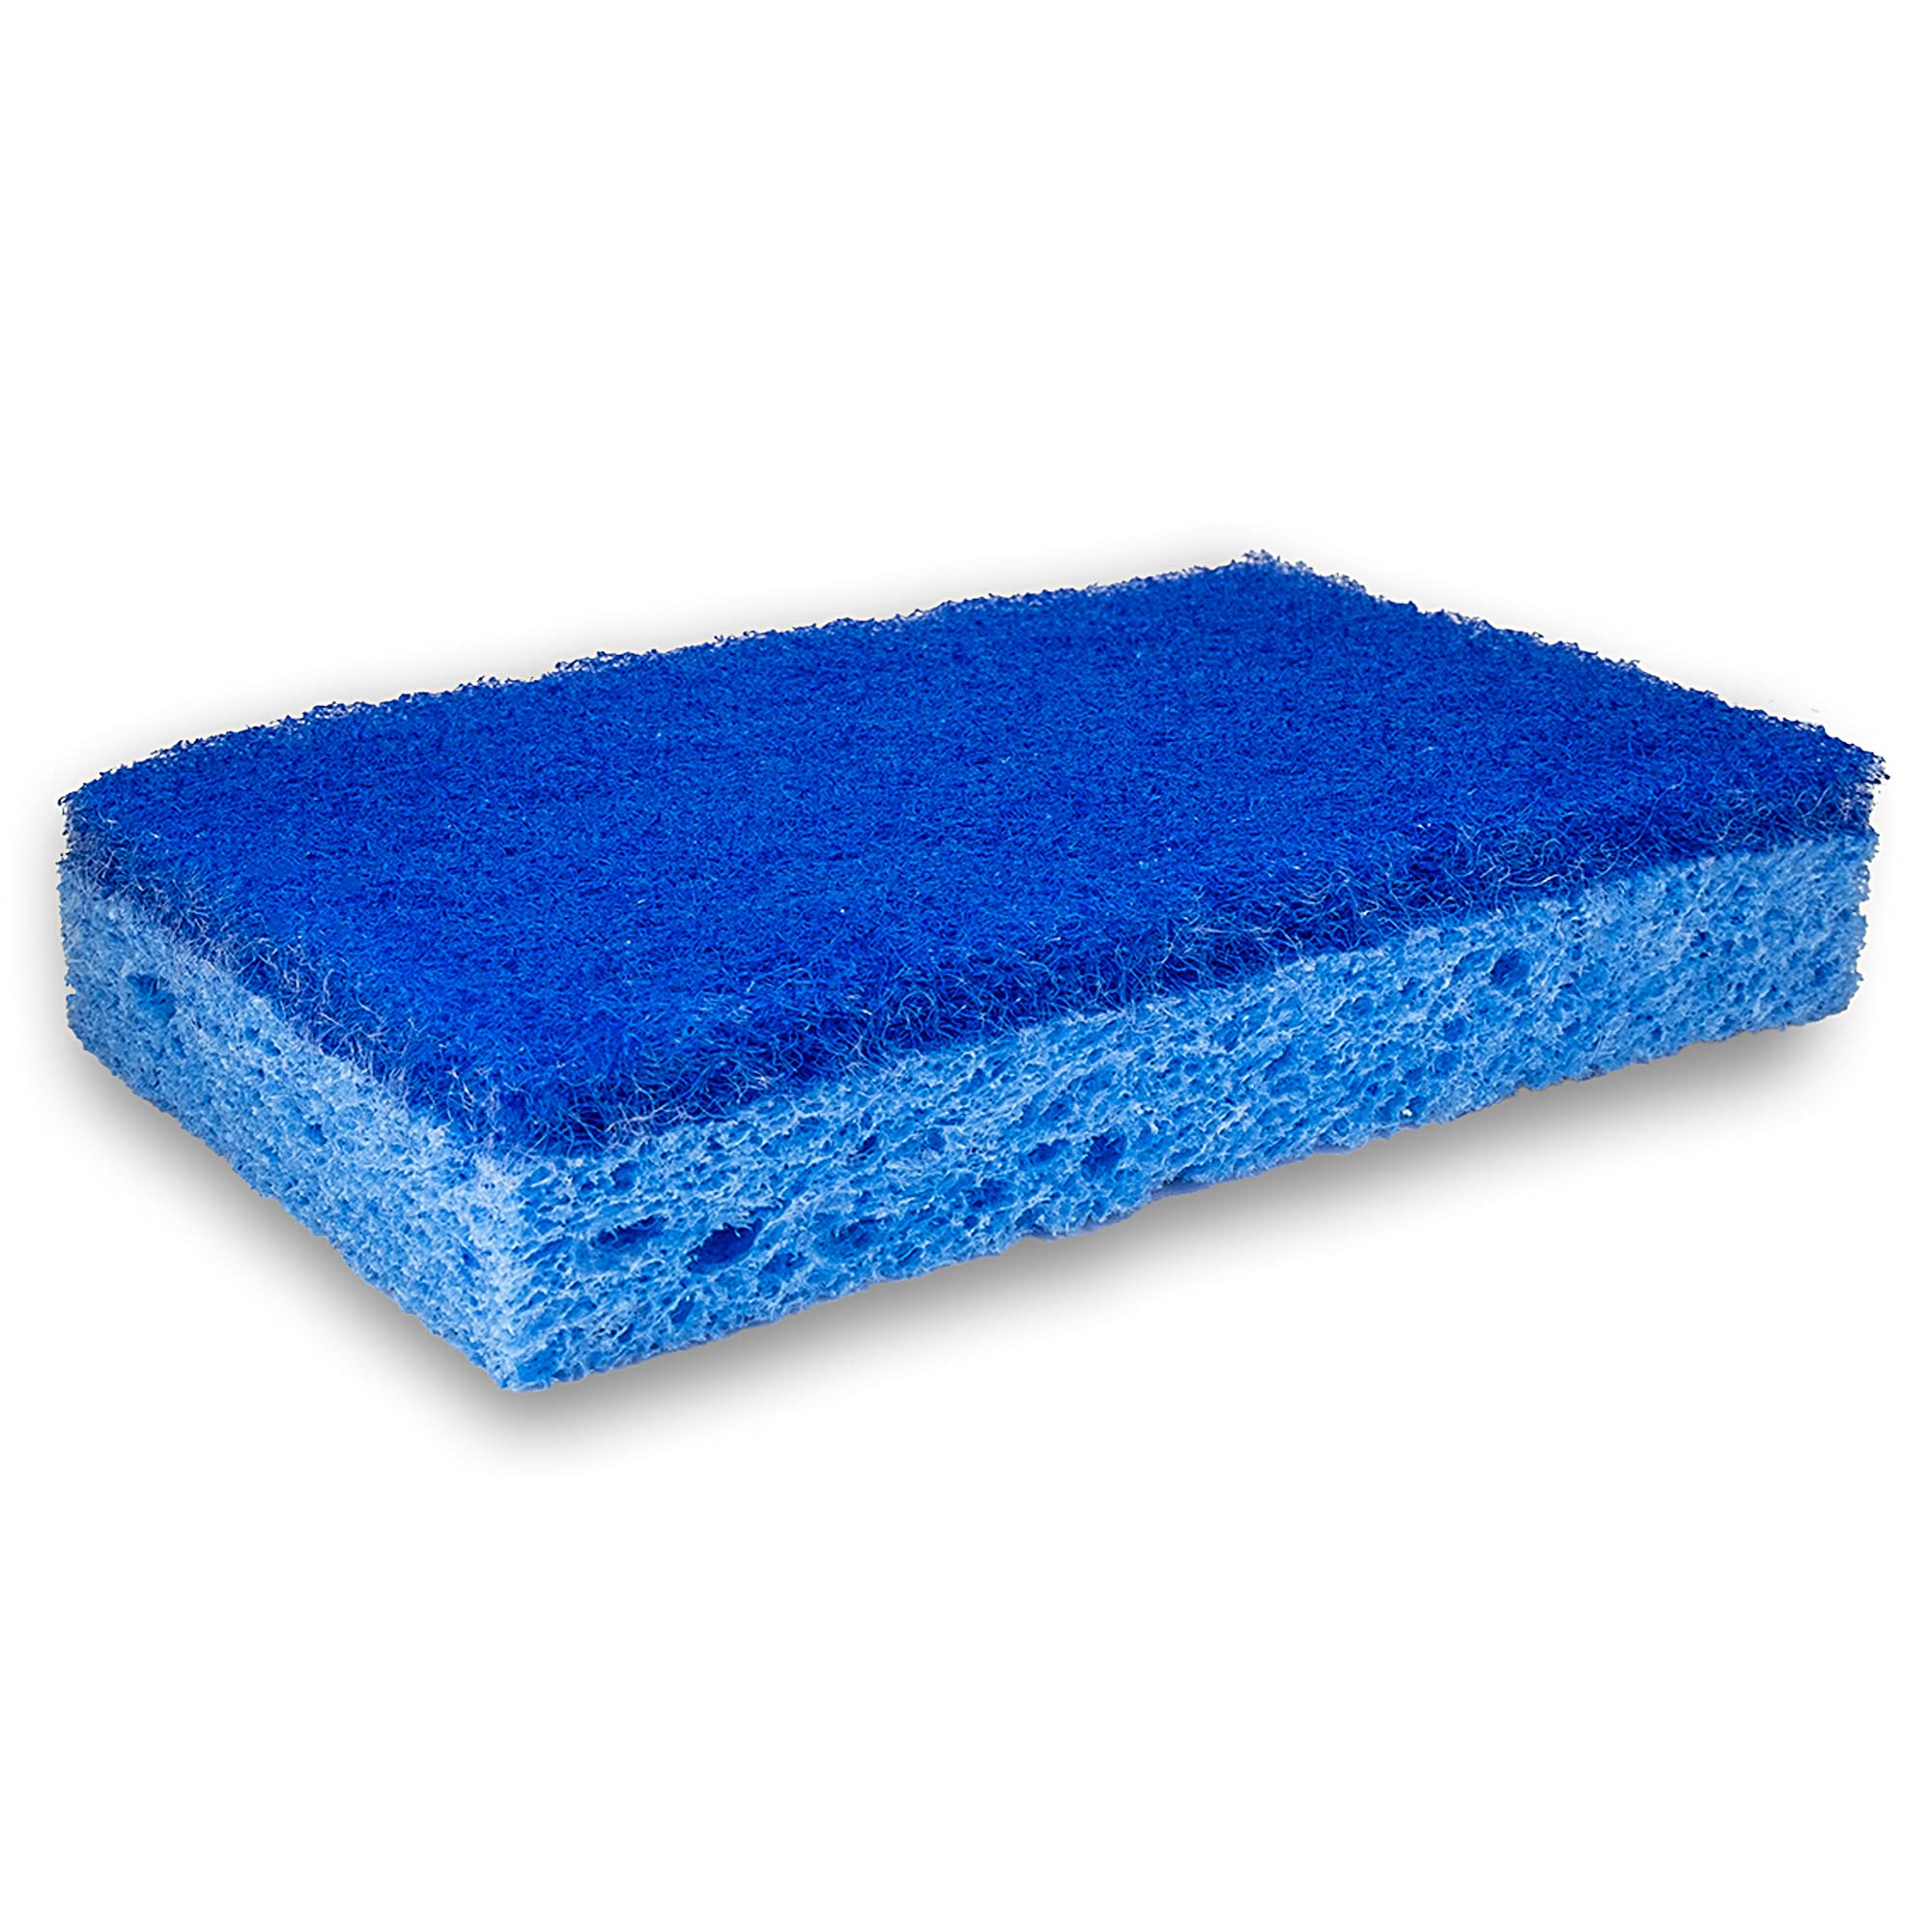 Amazon Basics Non-Scratch Sponges, 6-Pack, Blue